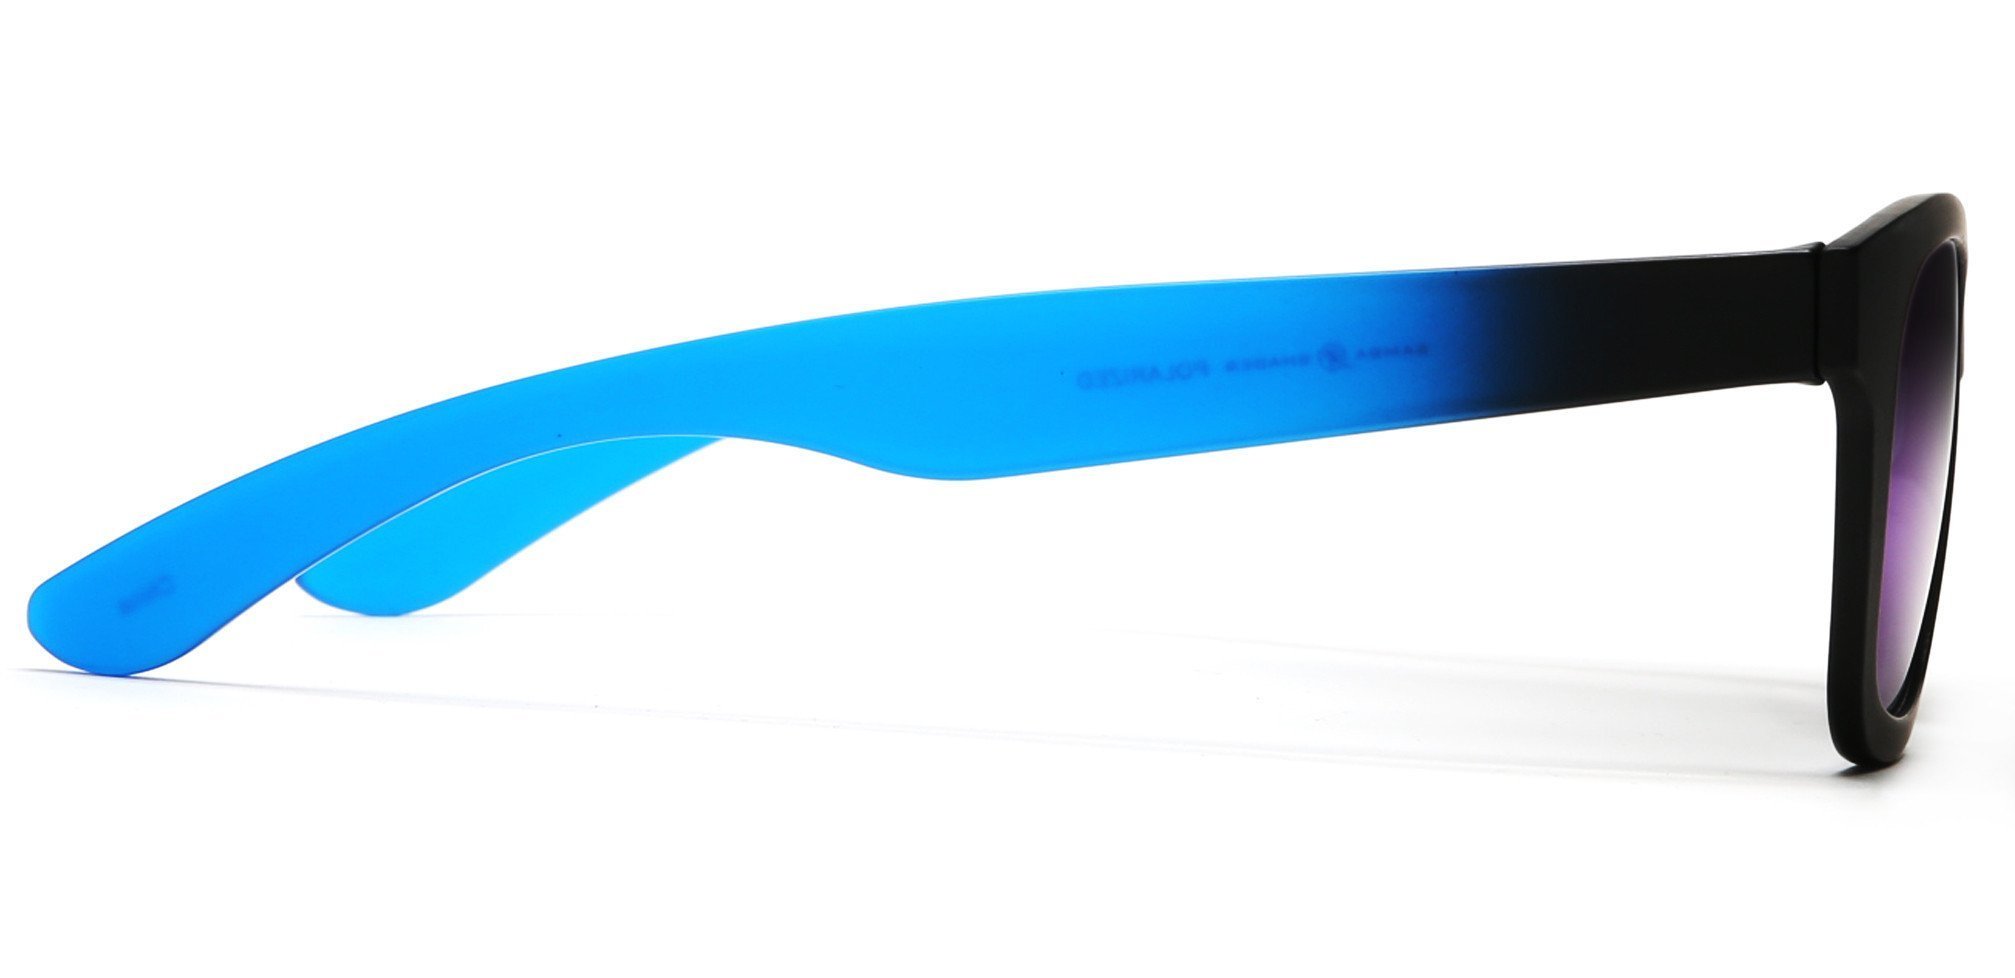 Valencia Polarized Horn Rimmed Sunglasses TR90 Unbreakable Construction Black-Samba Shades